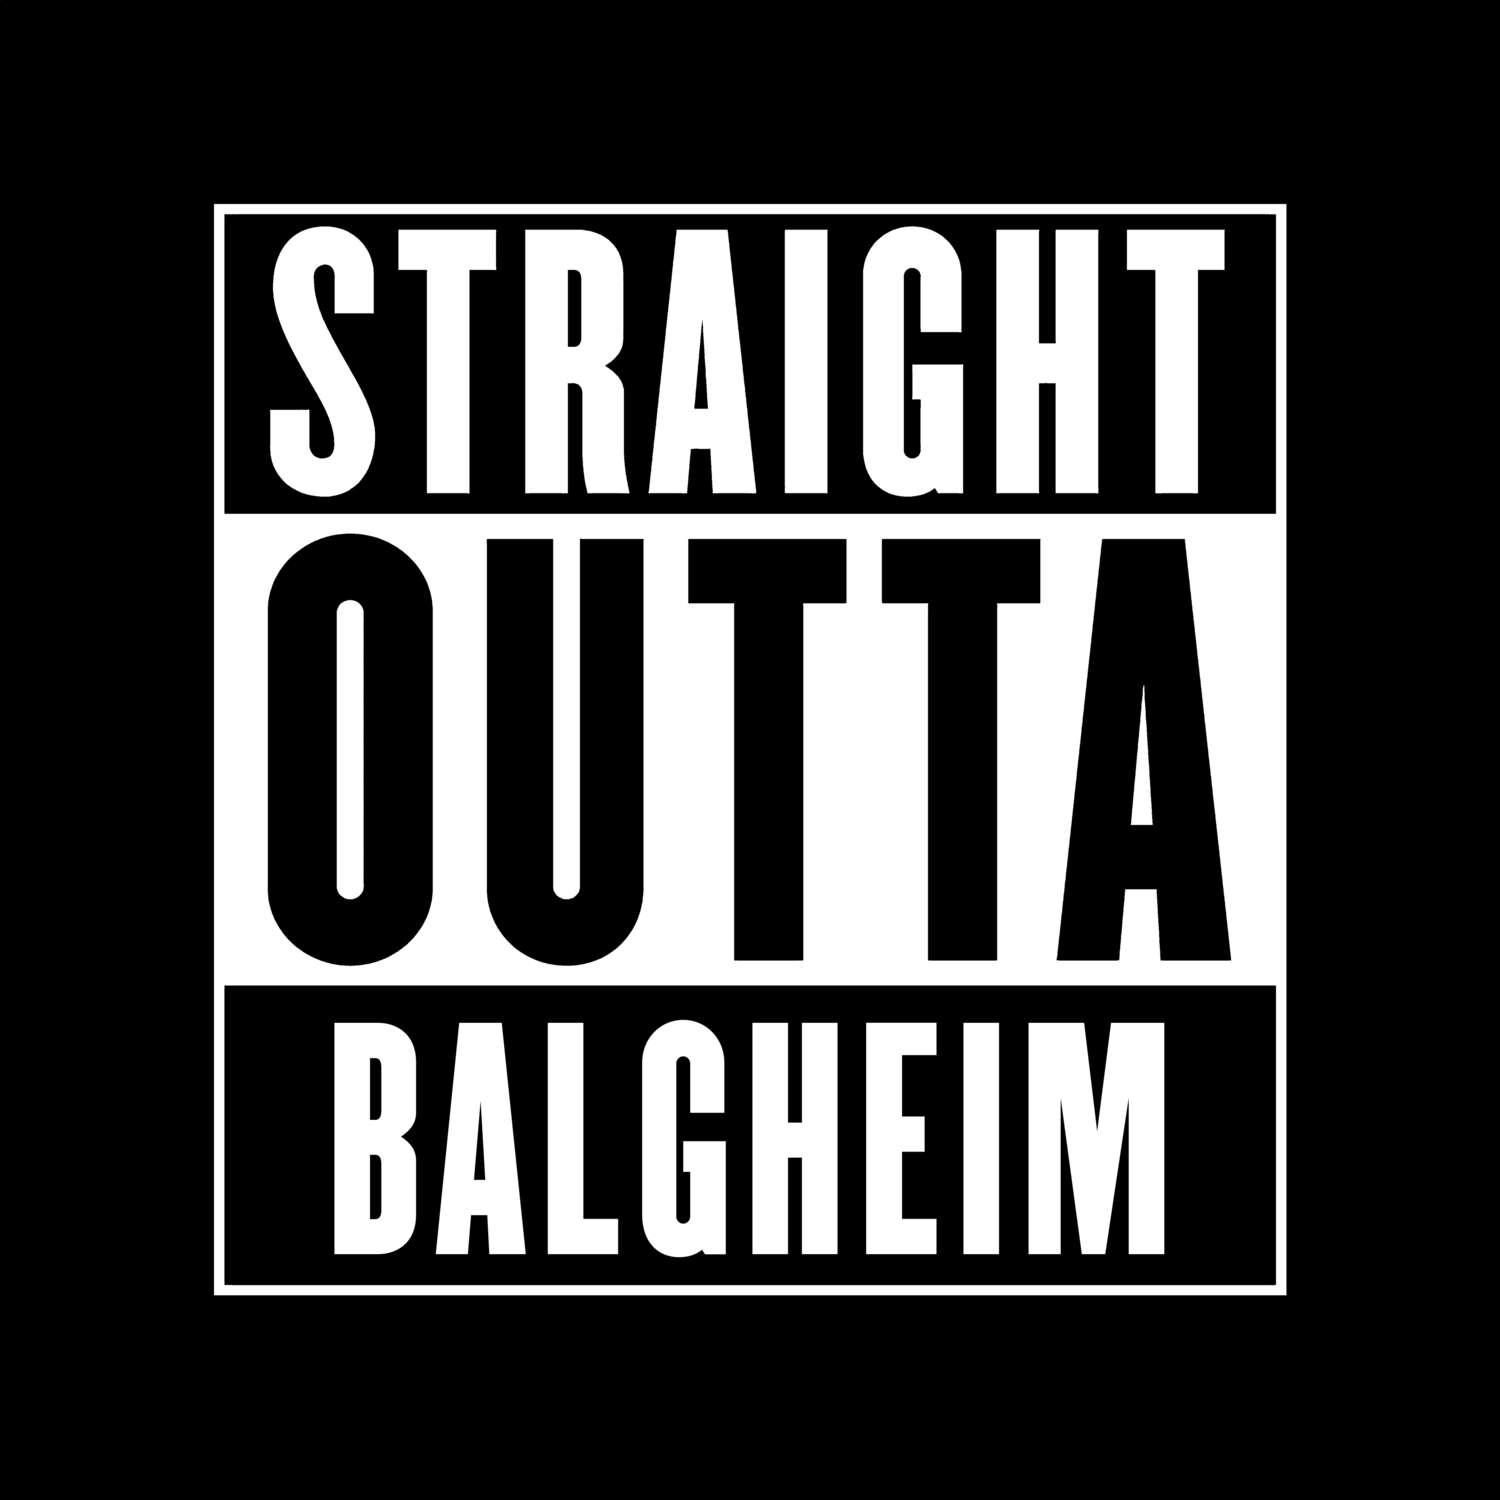 Balgheim T-Shirt »Straight Outta«